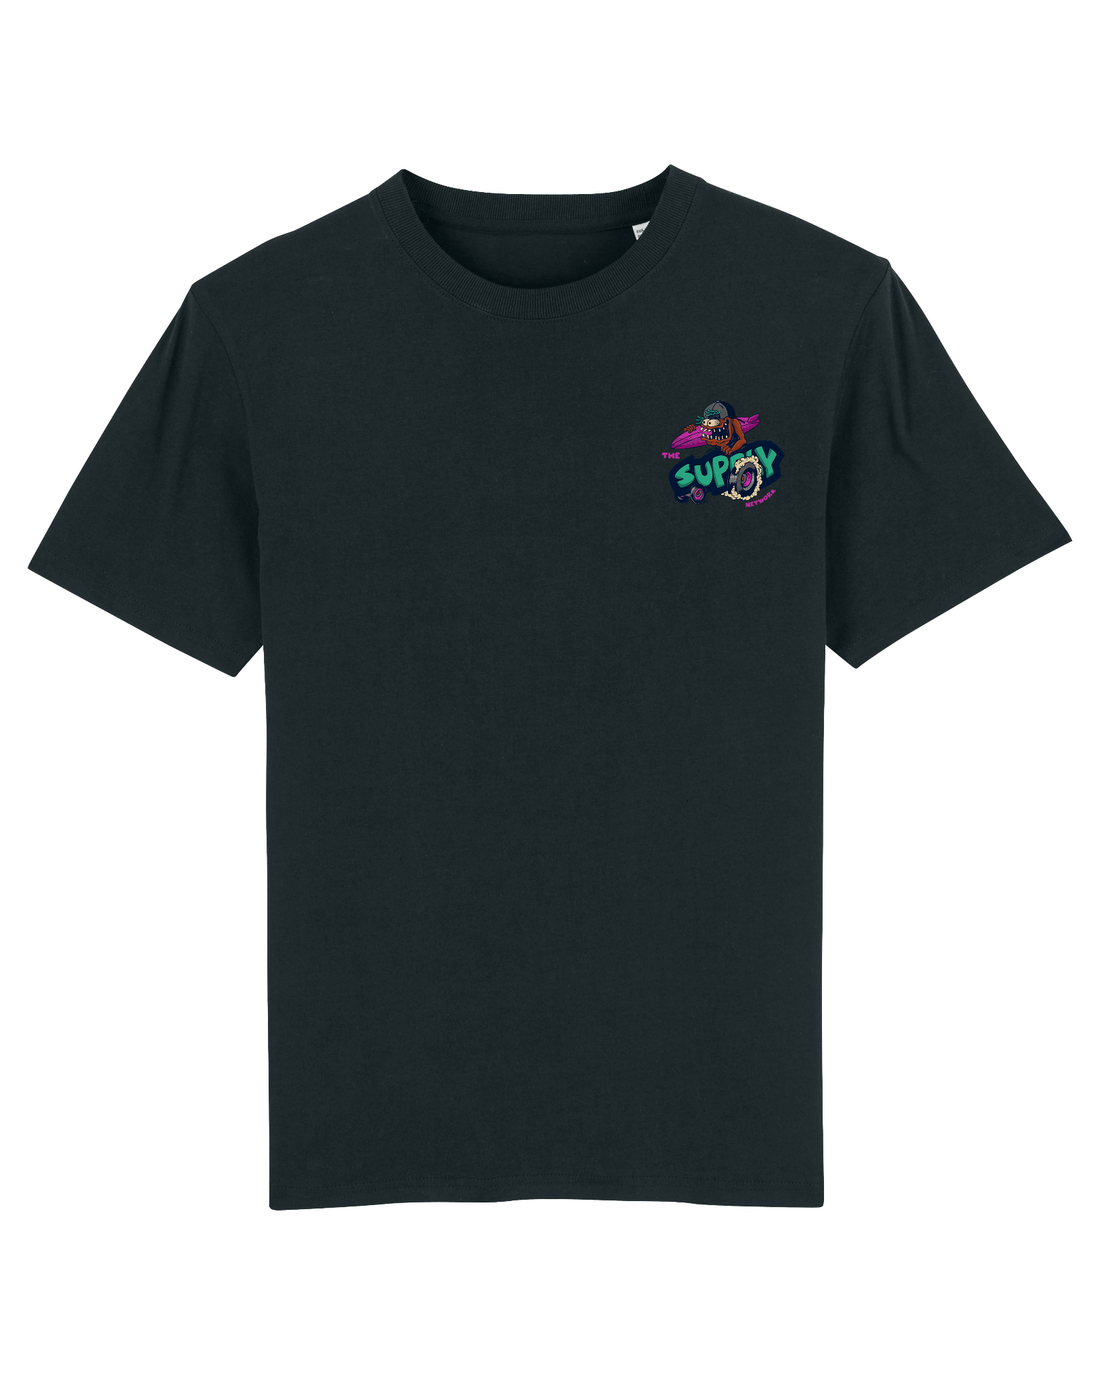 Black Skater T-Shirt, Lets Go Surf Back Print